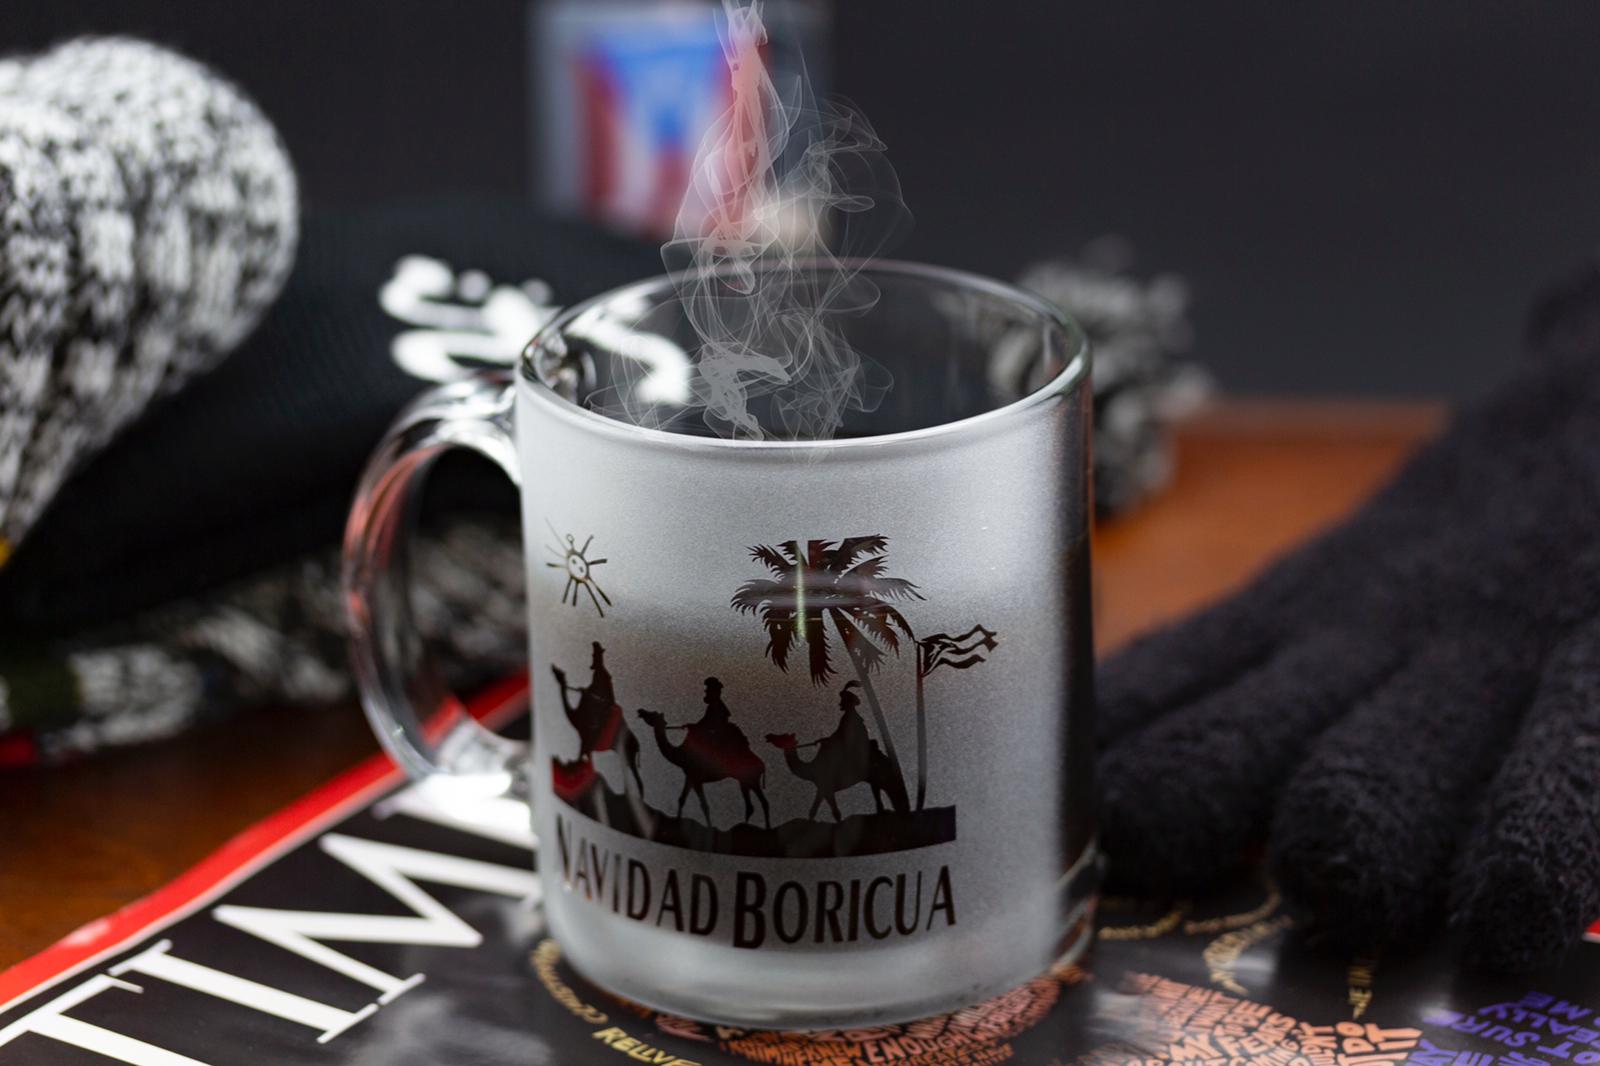 Navidad Boricua Coffee Mug